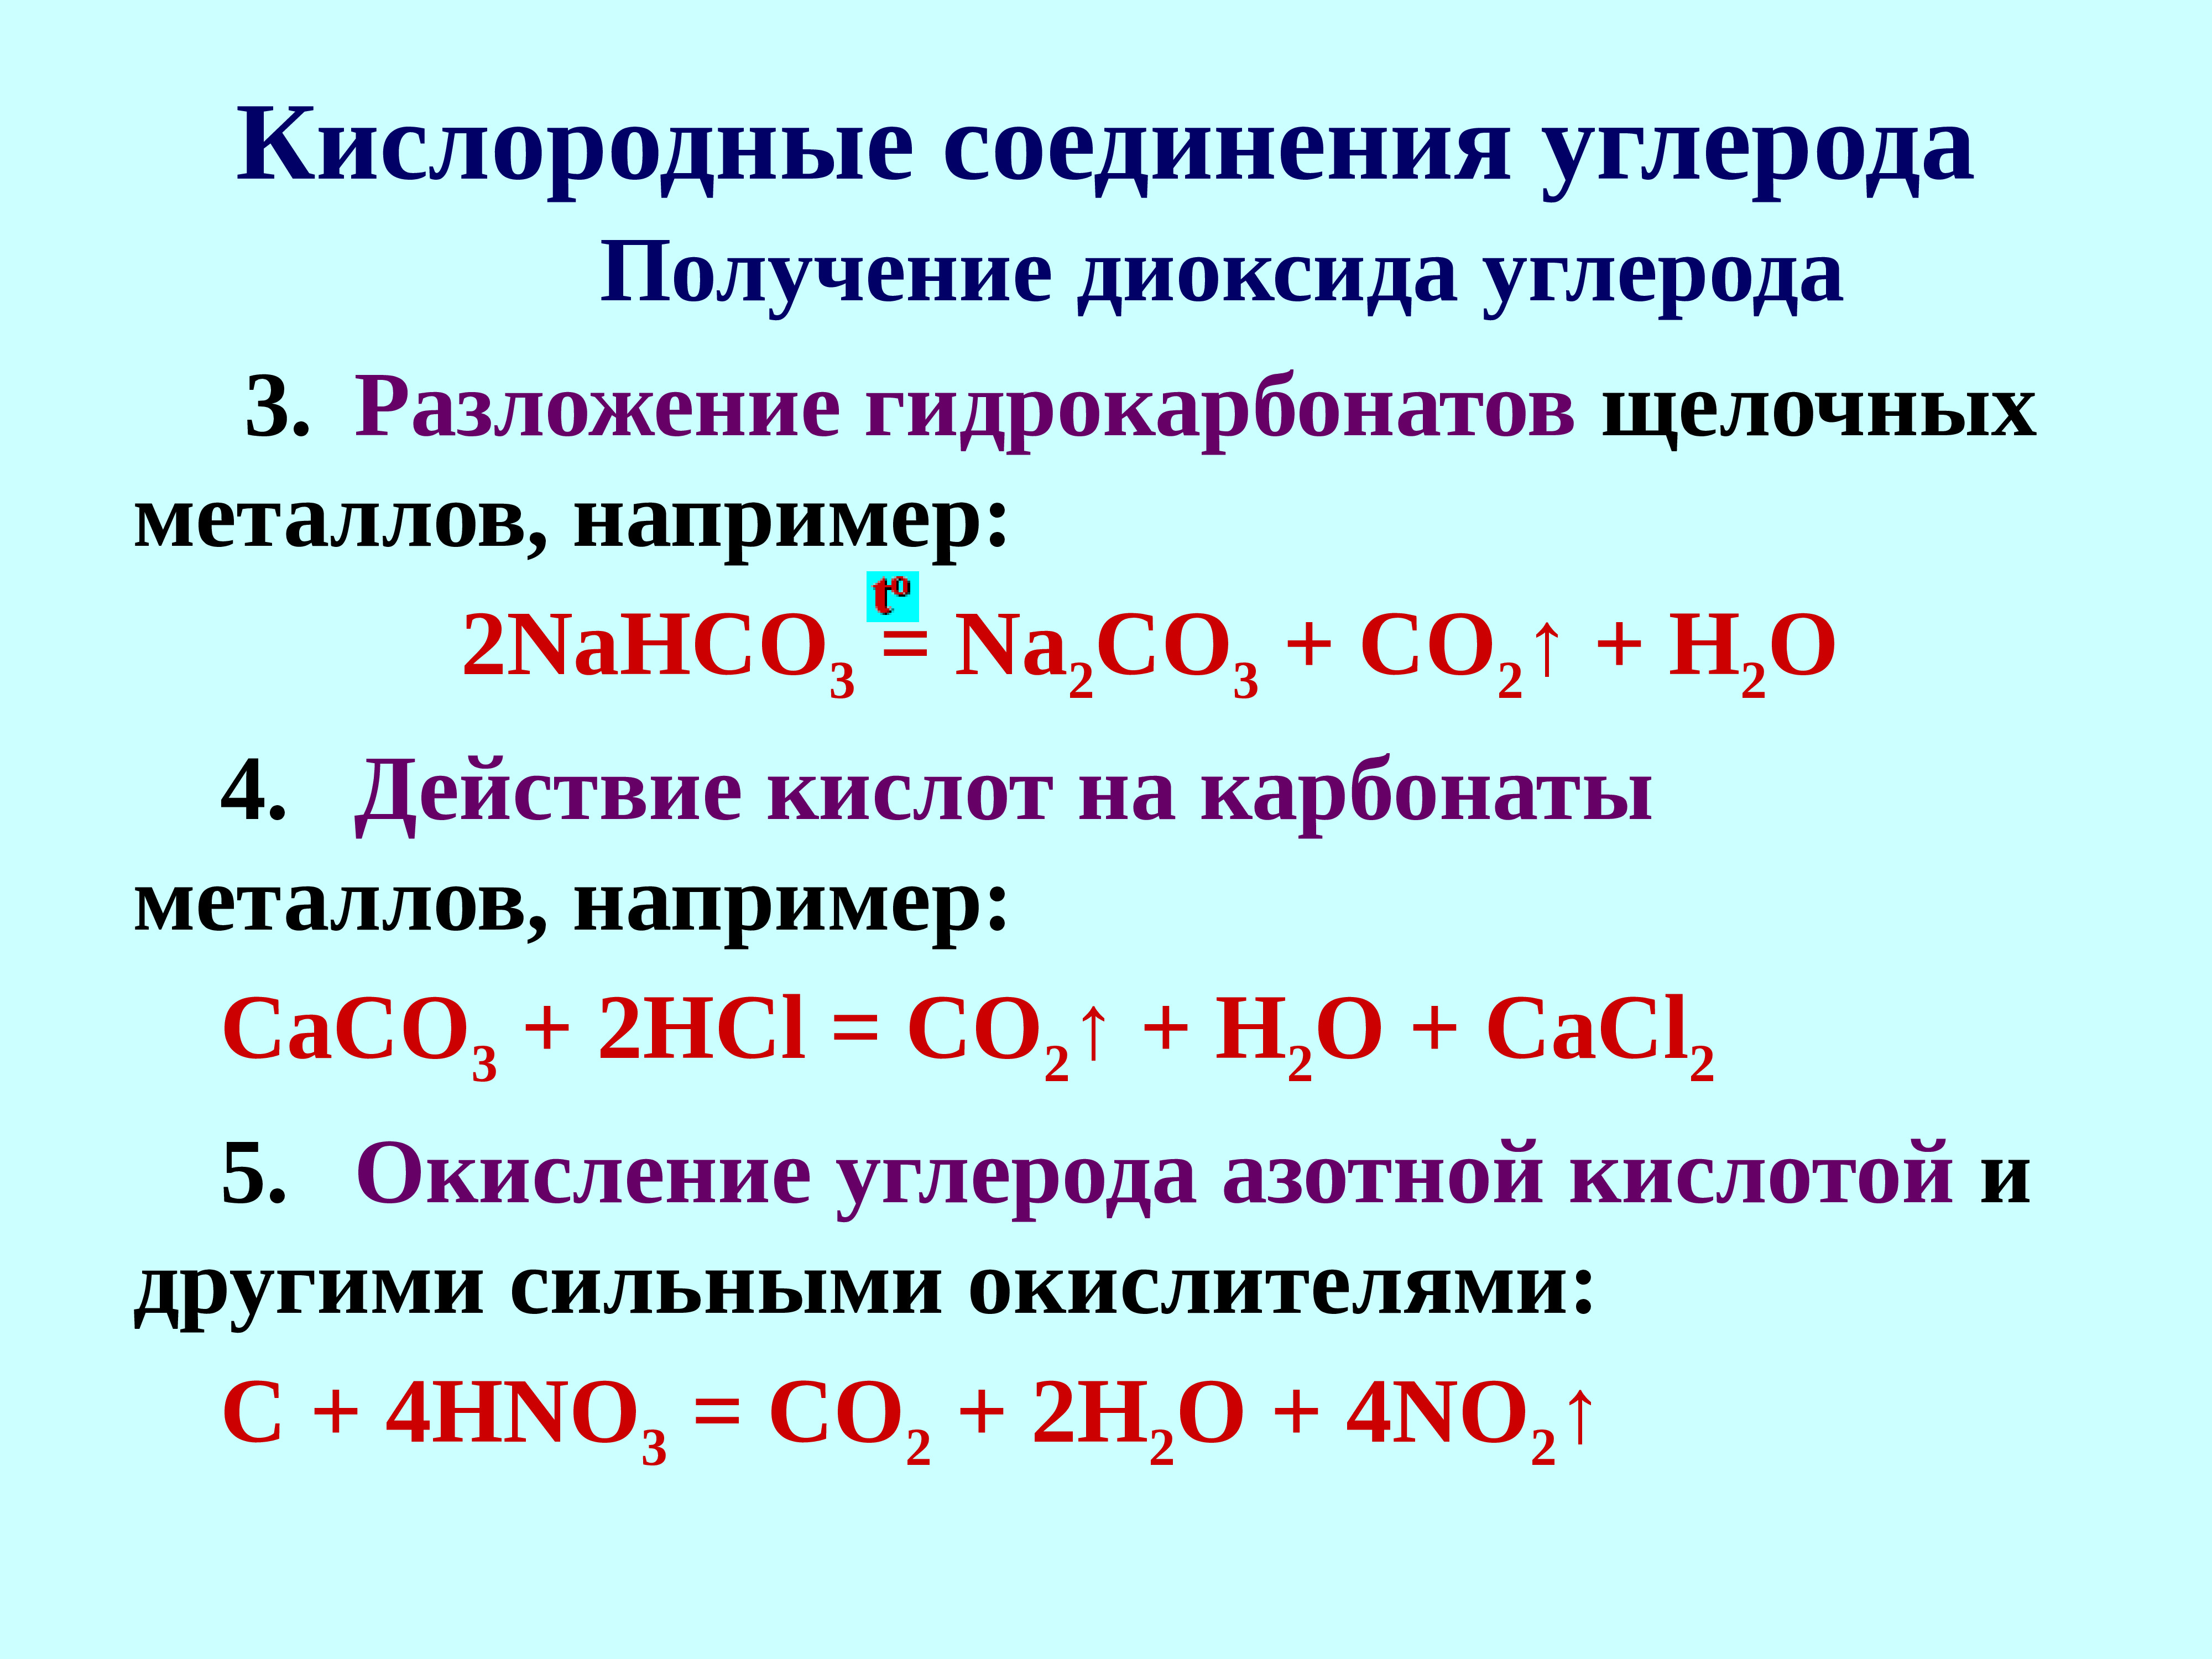 Сложные соединения углерода. Кислородные соединения углерода 9 класс. Кислородные соединения углерода 9 класс таблица. Соединения углерода с кислородом. Химические соединения углерода.